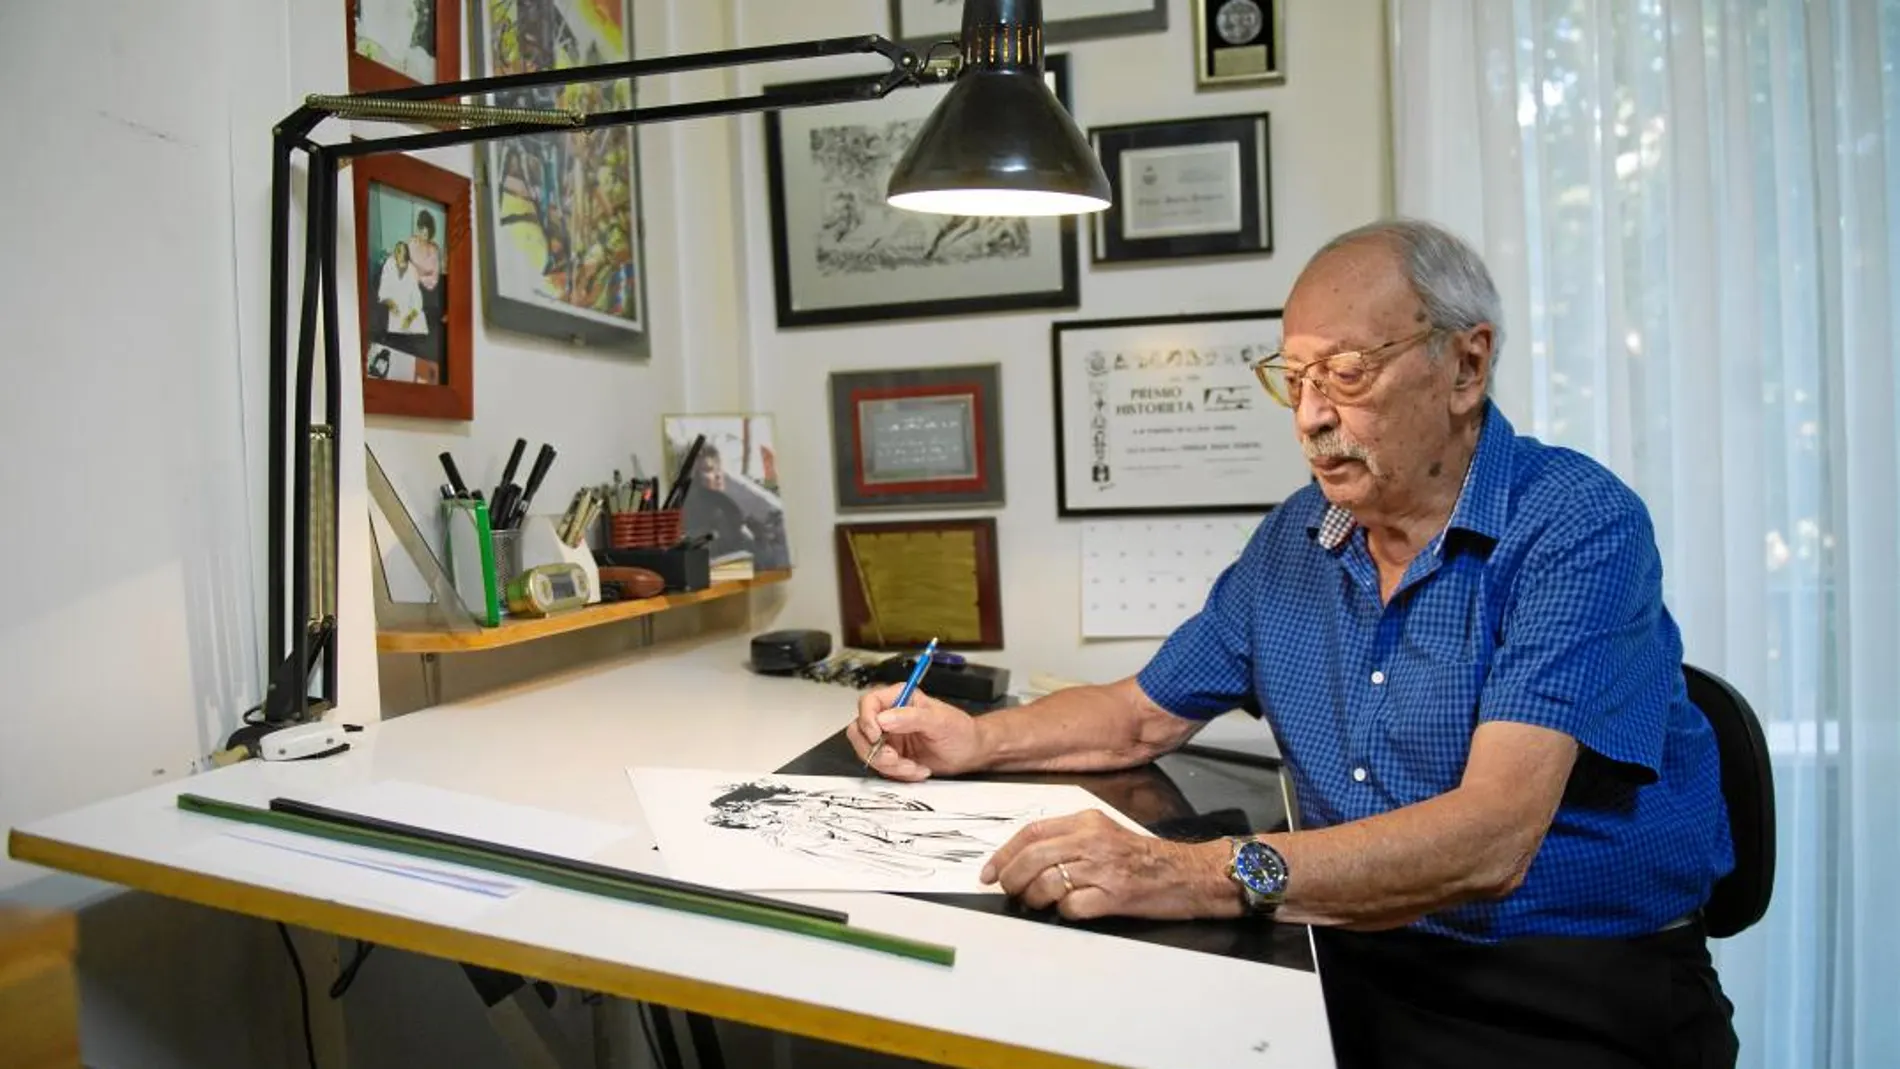 El dibujante Enric Badia en su estudio barcelonés donde sigue trabajando en libros y en encargos para todo el mundo / Foto: Shooting